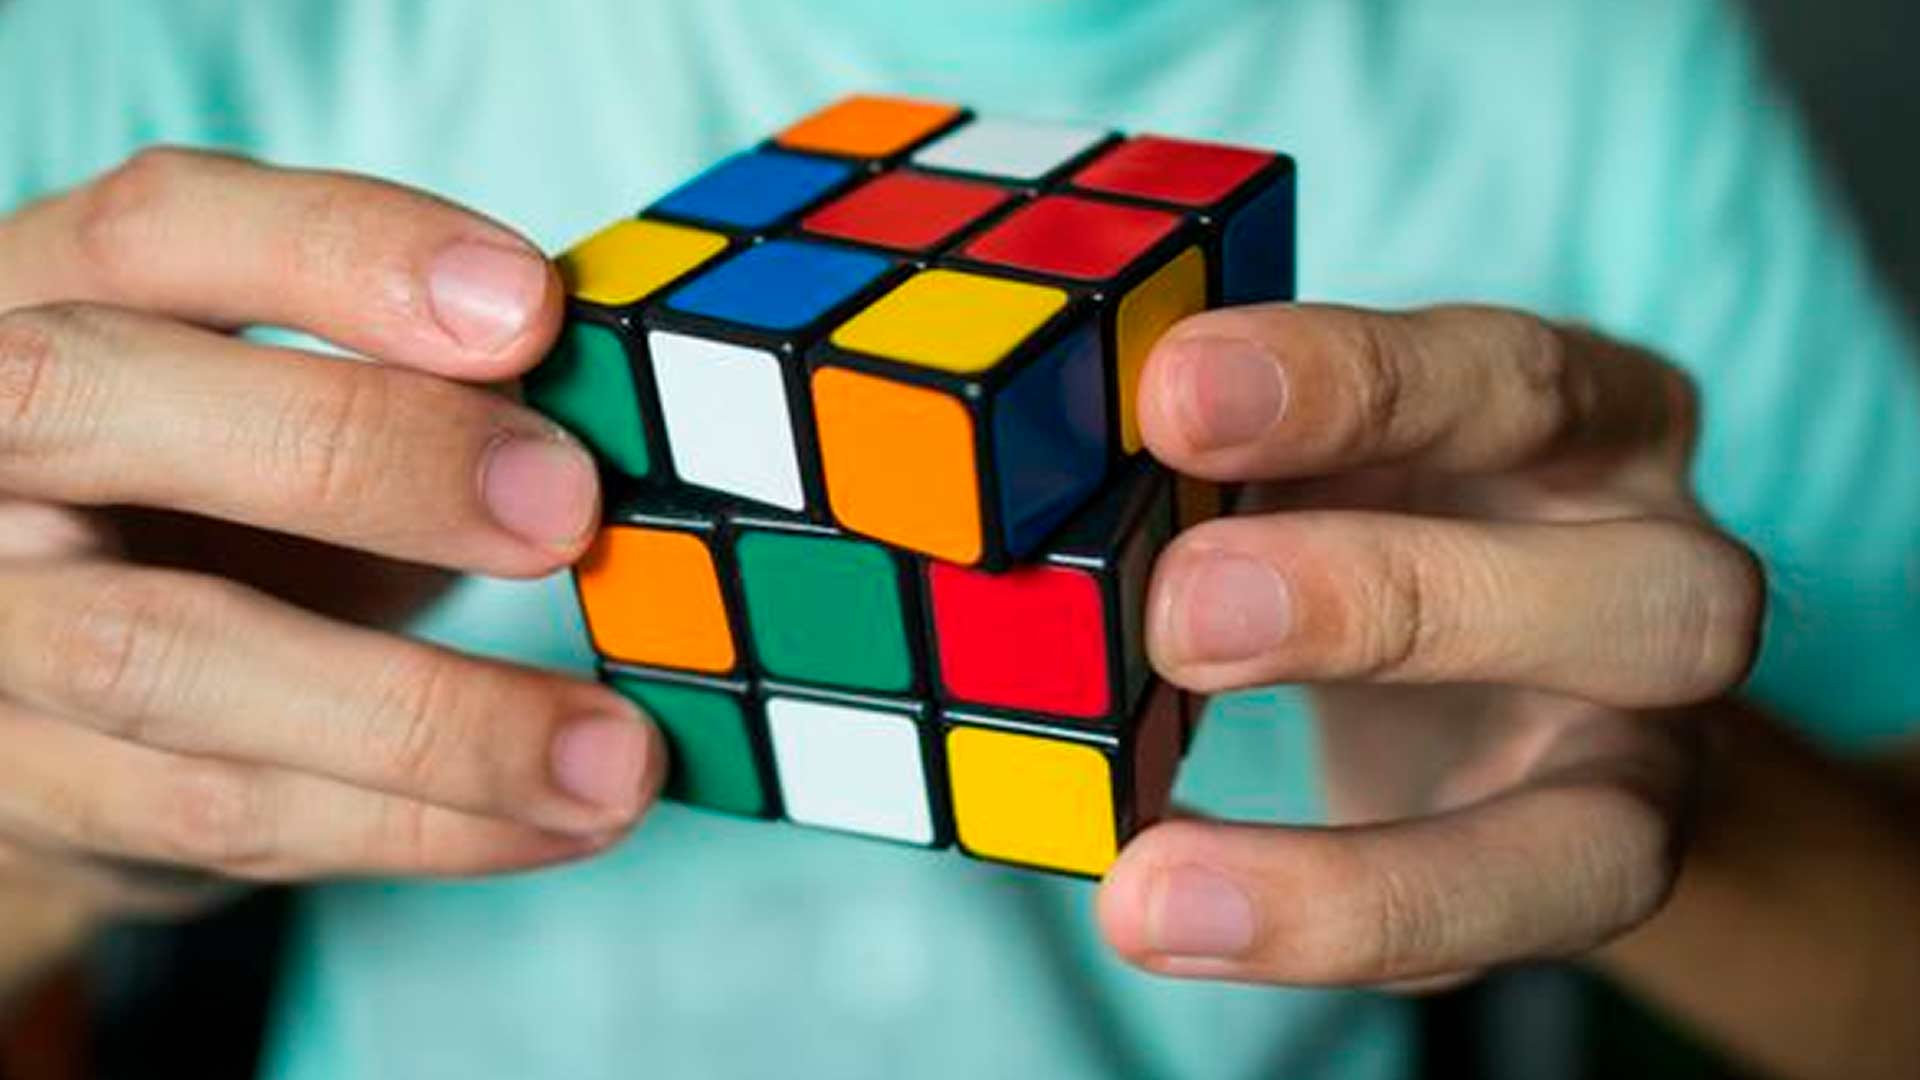 El cubo de Rubik o cubo mágico es uno de los juegos que pueden ayudar a relajar y controlar es estrés, además de potenciar la memoria y el ejercicio cognitivo (Foto: ABC)